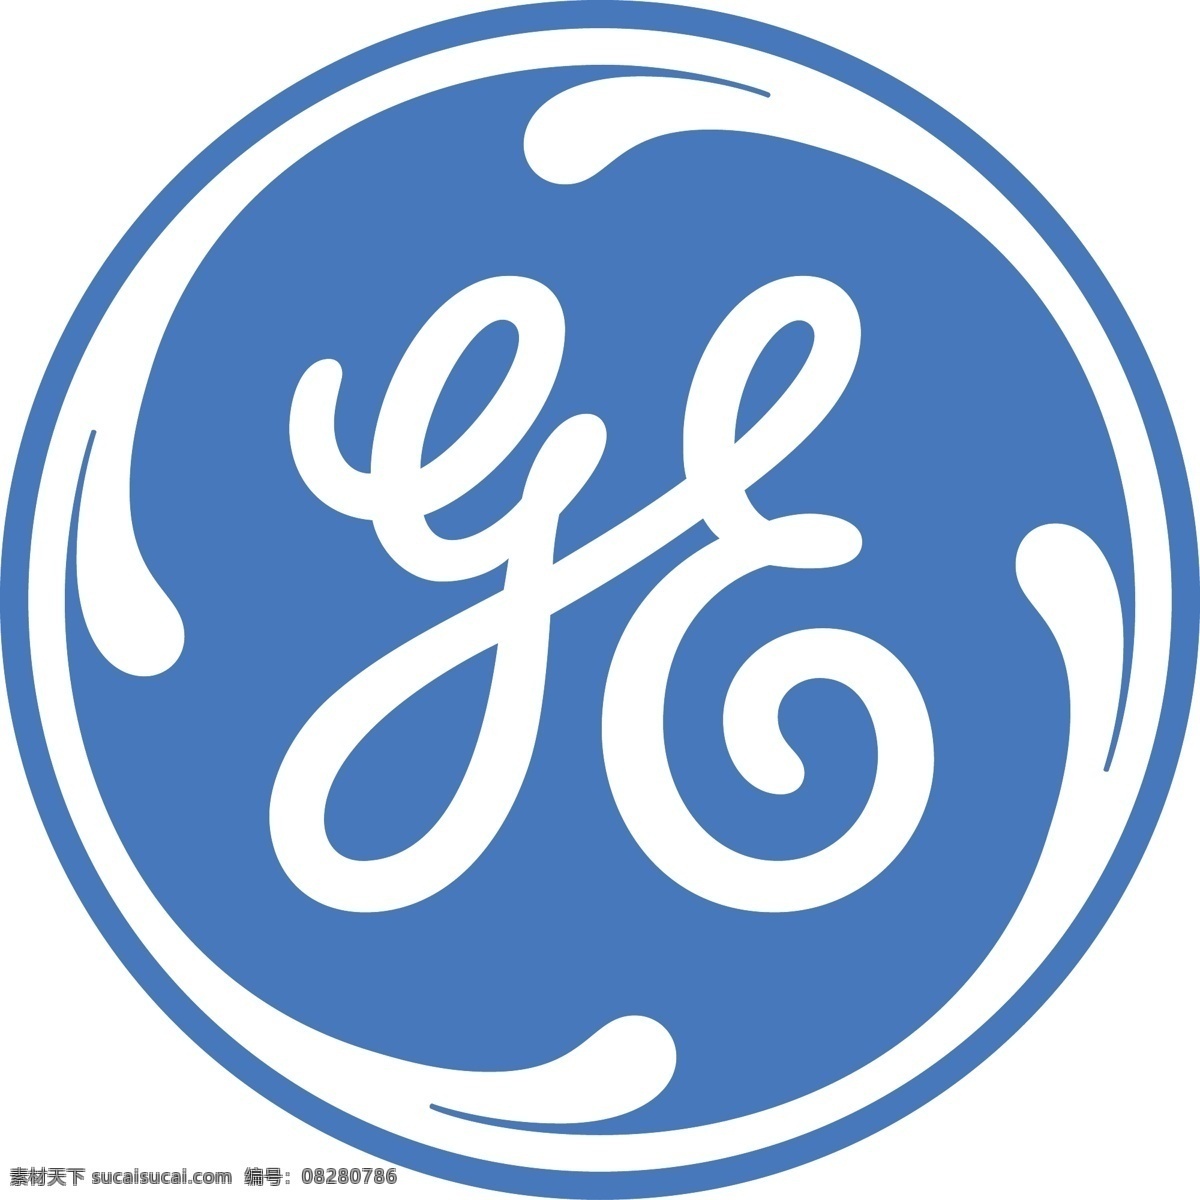 通用电气标志 ge logo 通用电气 标志 企业 标识标志图标 矢量